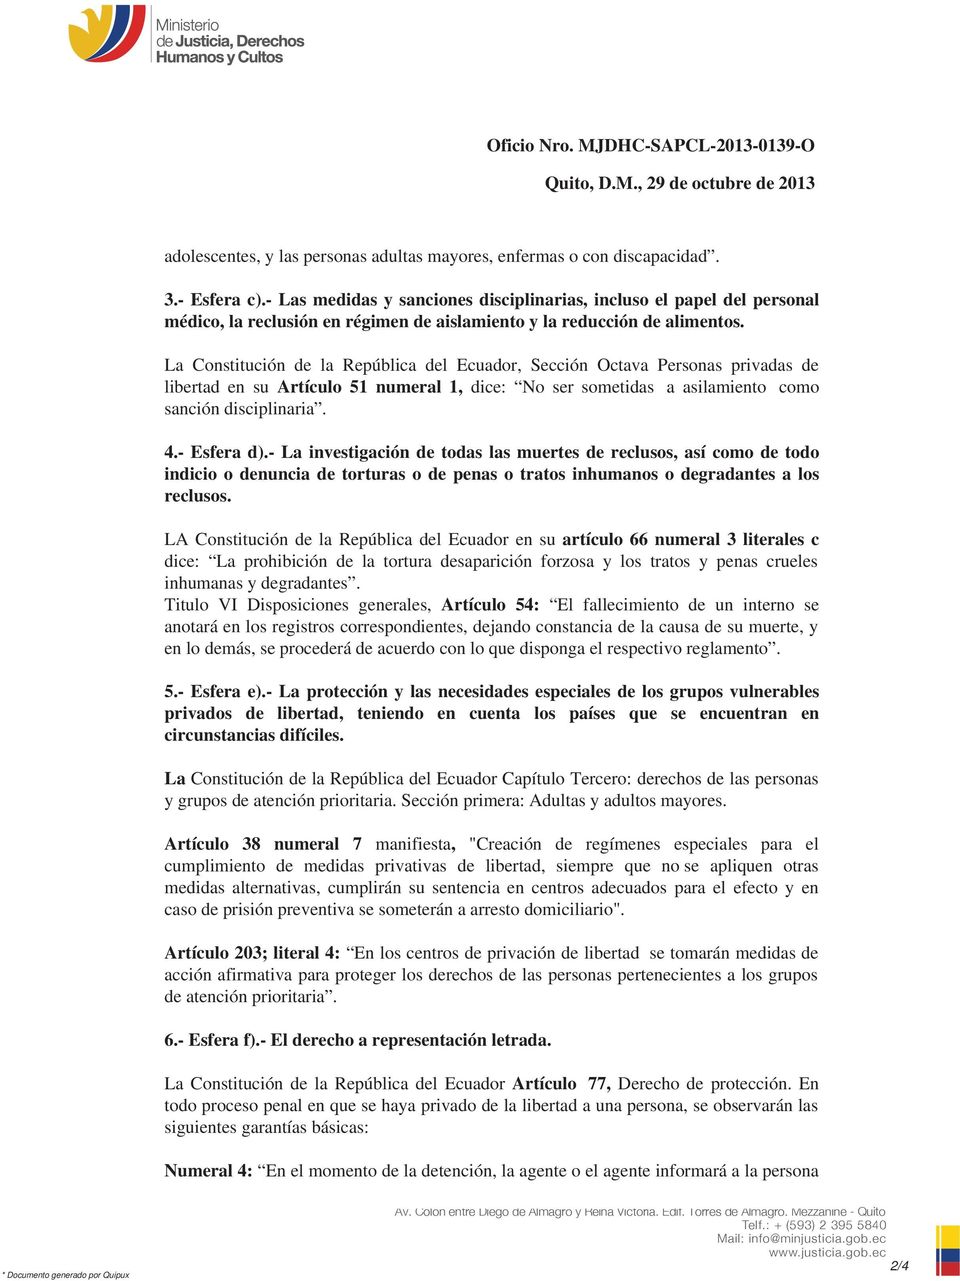 La Constitución de la República del Ecuador, Sección Octava Personas privadas de libertad en su Artículo 51 numeral 1, dice: No ser sometidas a asilamiento como sanción disciplinaria. 4.- Esfera d).